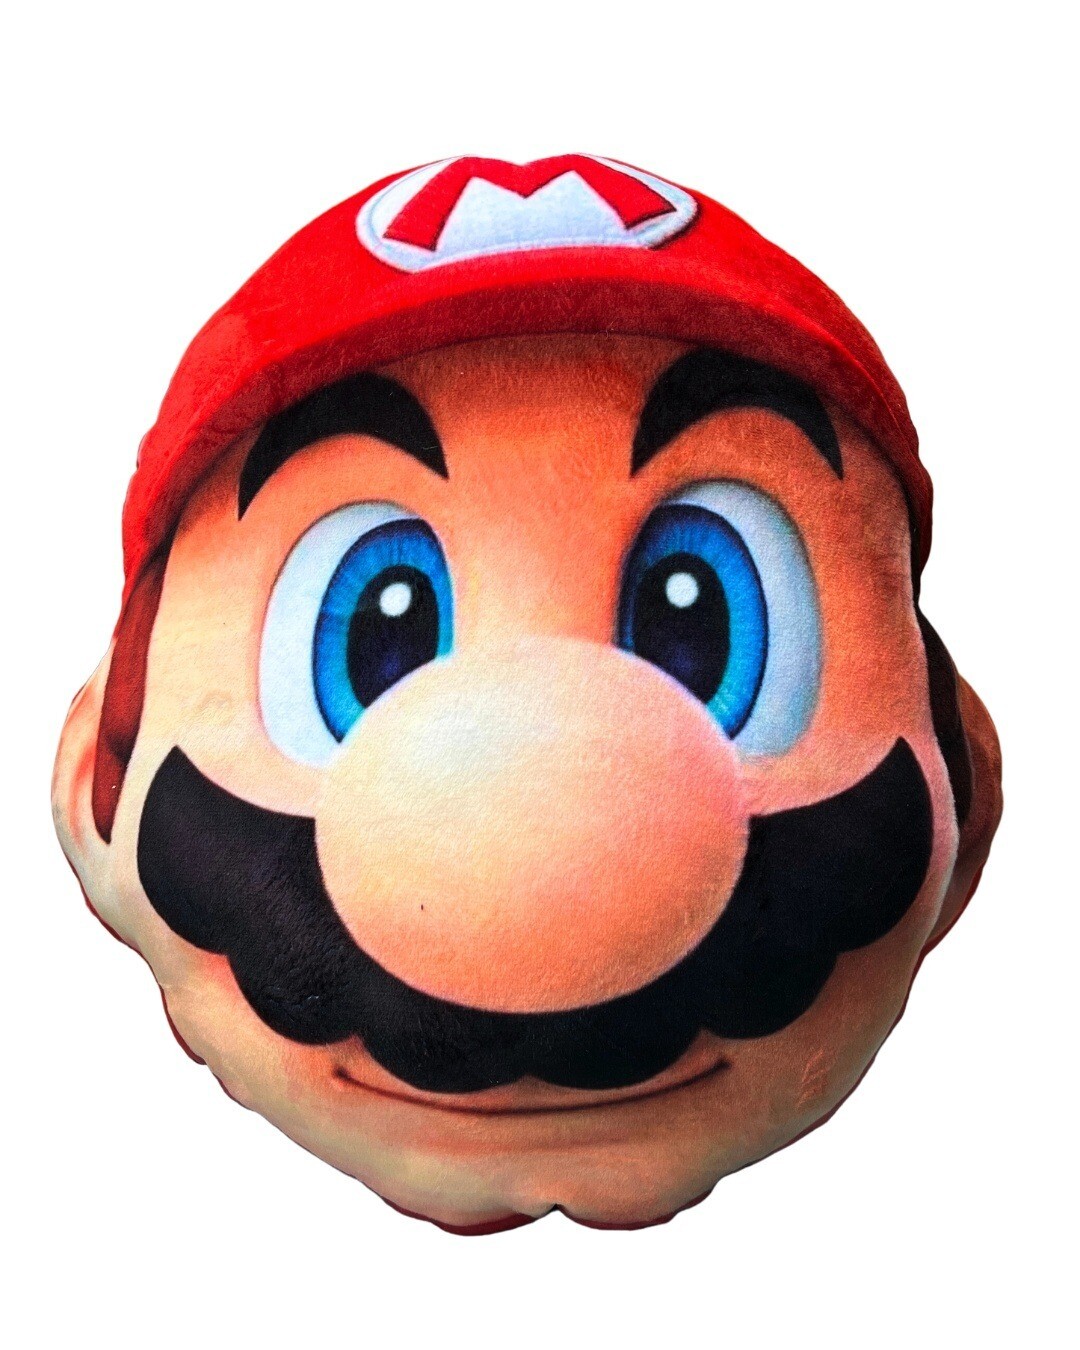 Cojin de Mario - Colección Super Mario Bros